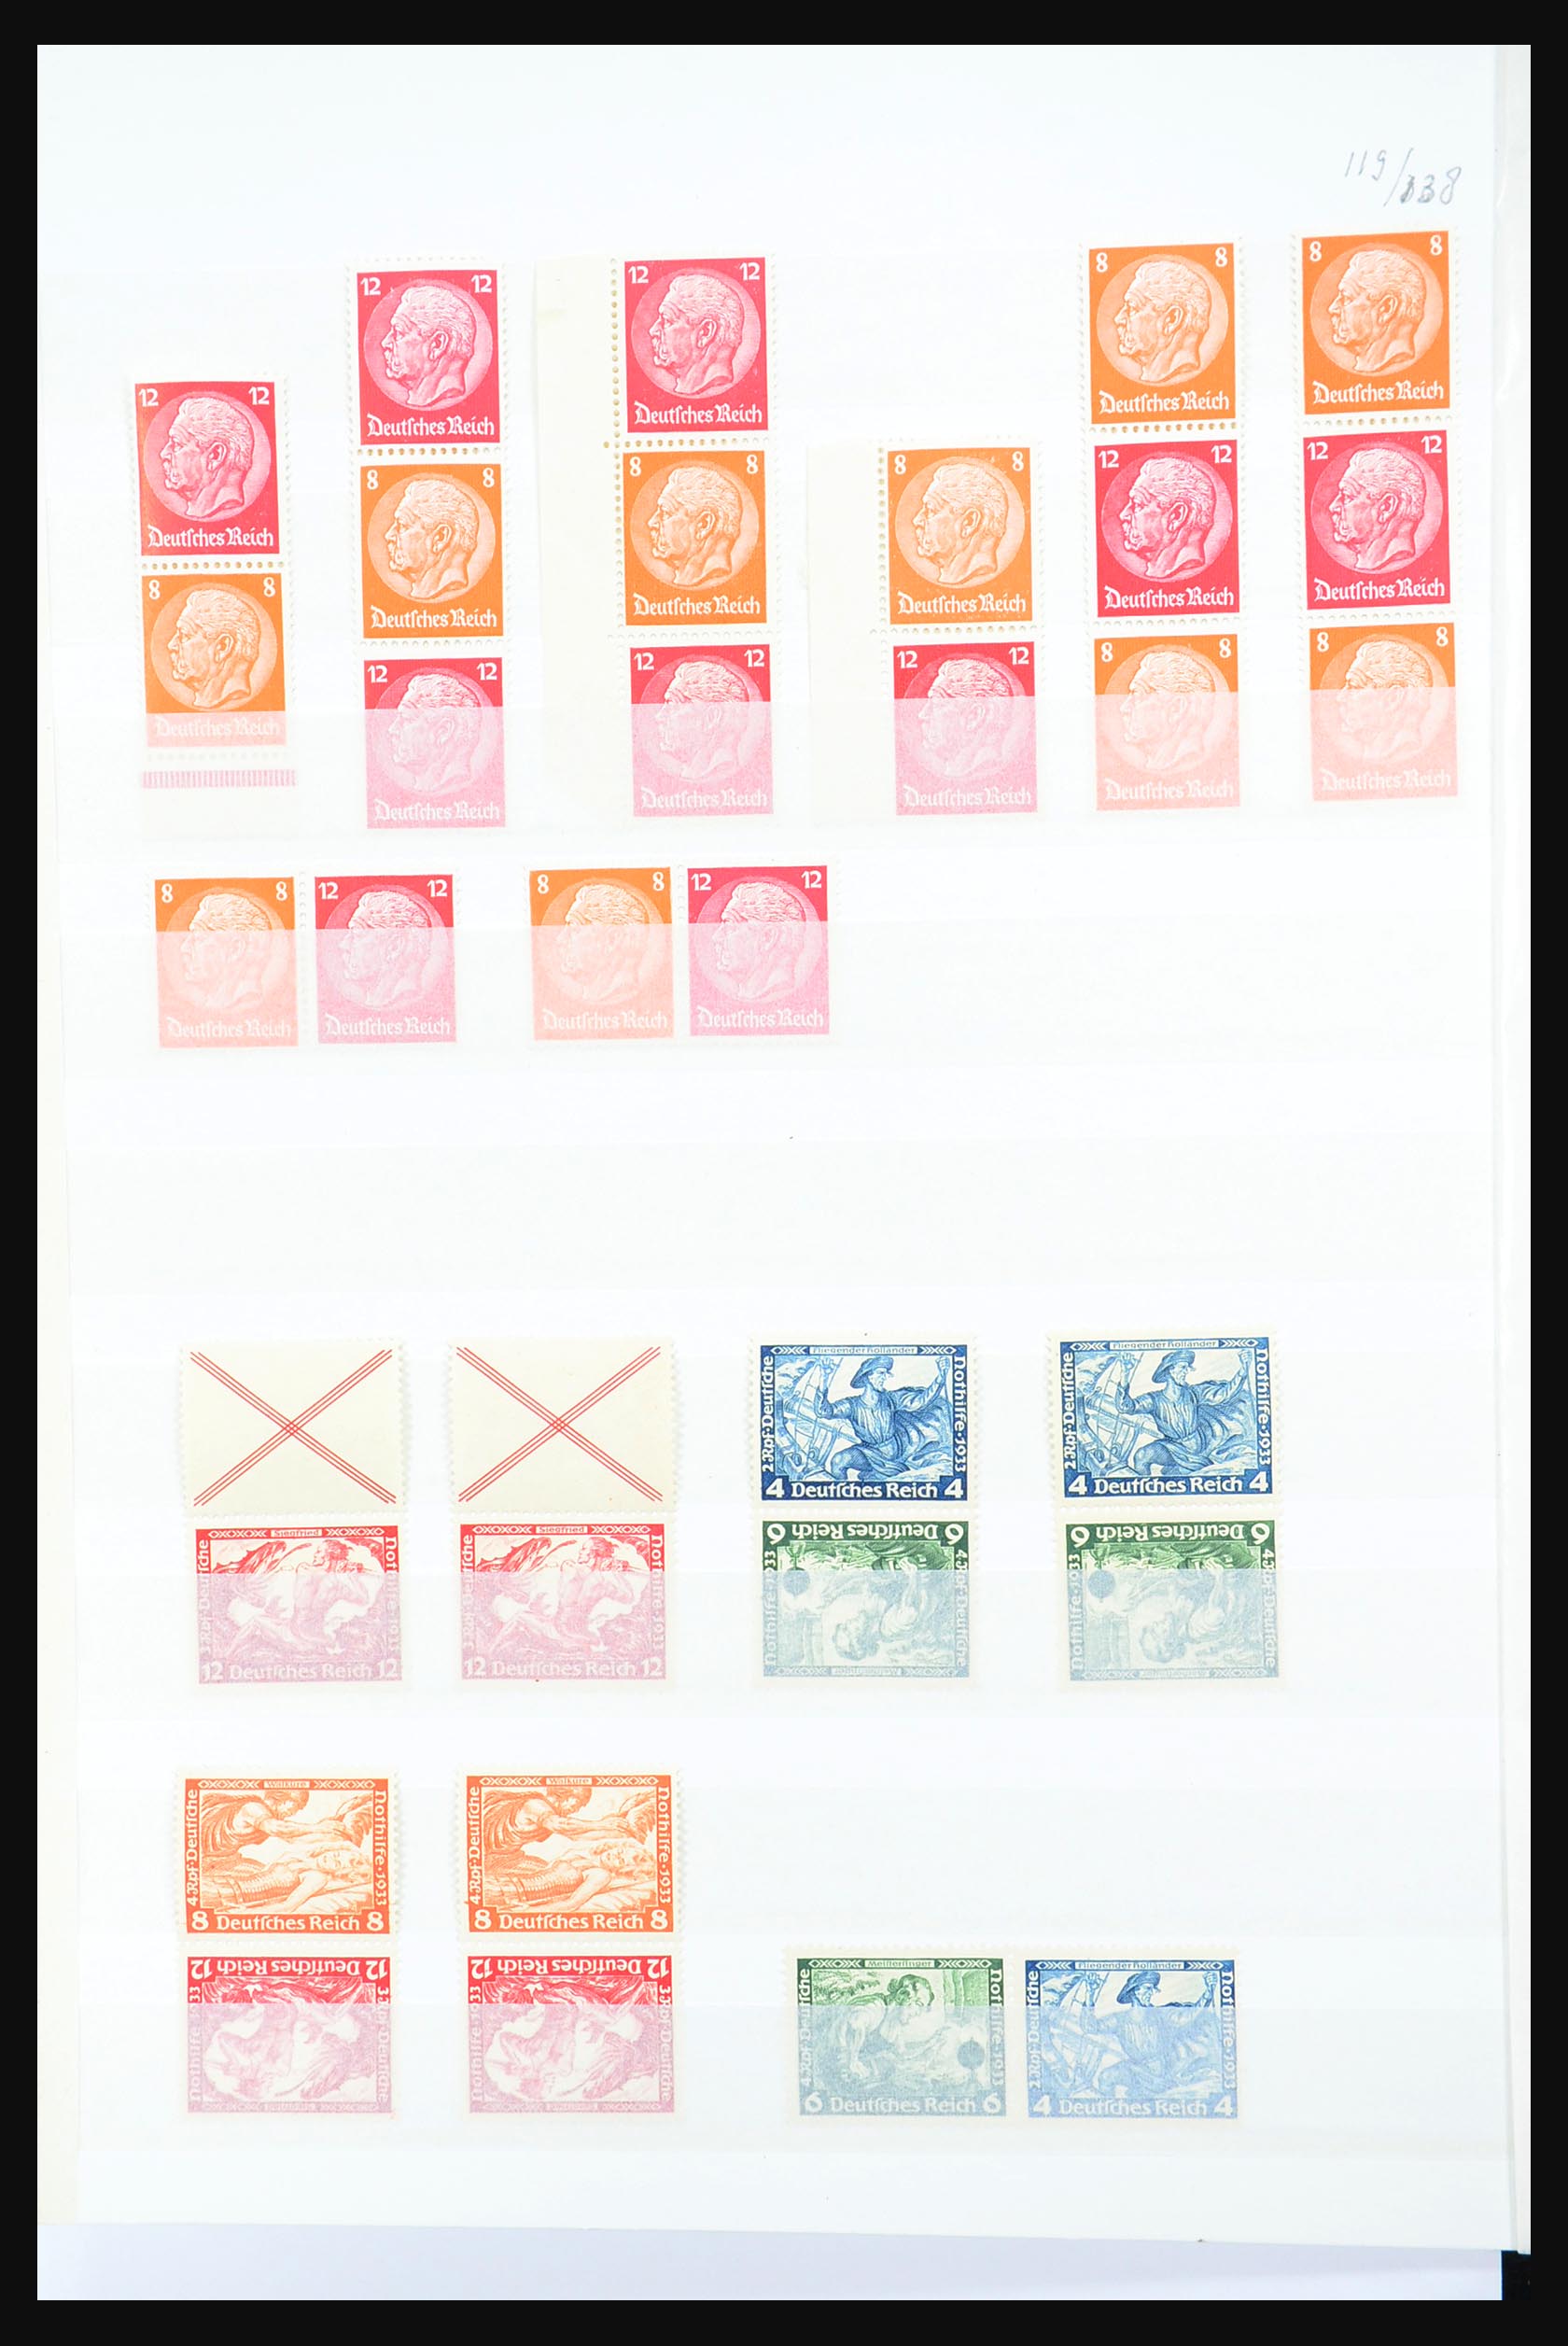 31391 012 - 31391 Duitse Rijk combinaties postfris 1913-1941.